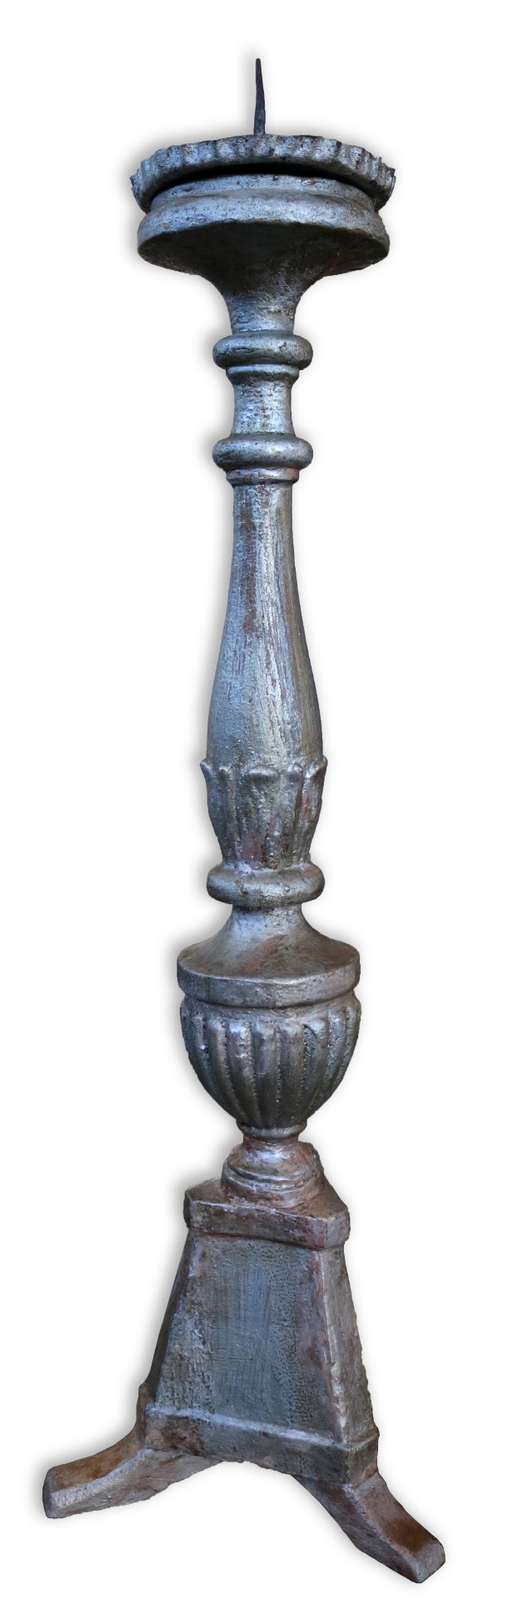 Antico candelabro in legno. Epoca 1700. - Lampadari e Candelabri - Mobili antichi - Prodotti - Antichità Fiorillo